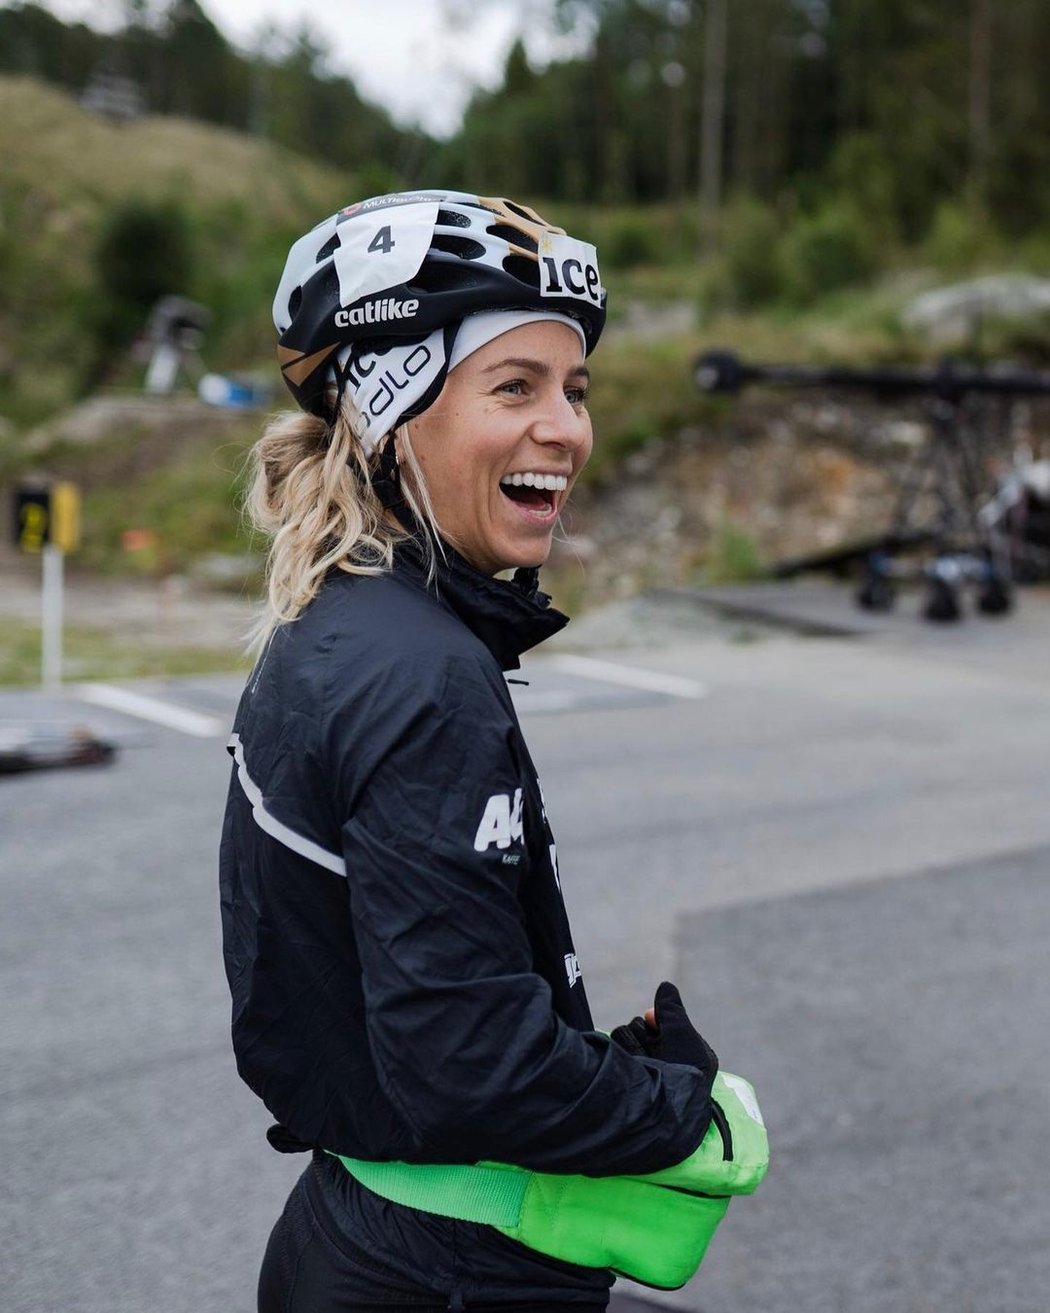 Tiril patří mezi největší hvězdy norského biatlonového týmu. Teď ale na soustředění chybí